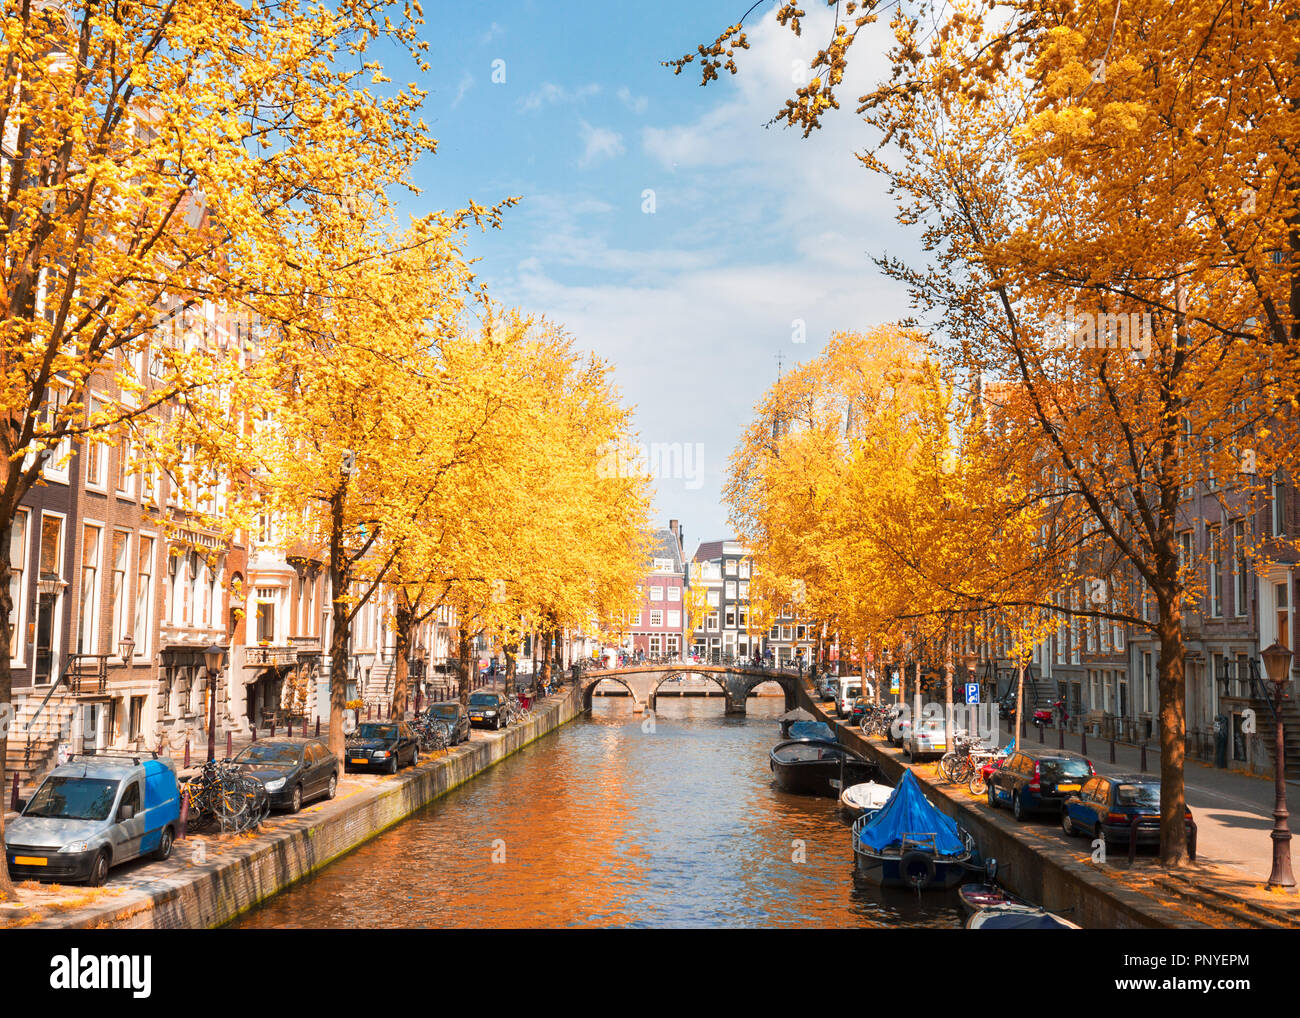 Uno dei canali di Amsterdam città vecchia con alberi verdi a cadere giorno,  Olanda Foto stock - Alamy